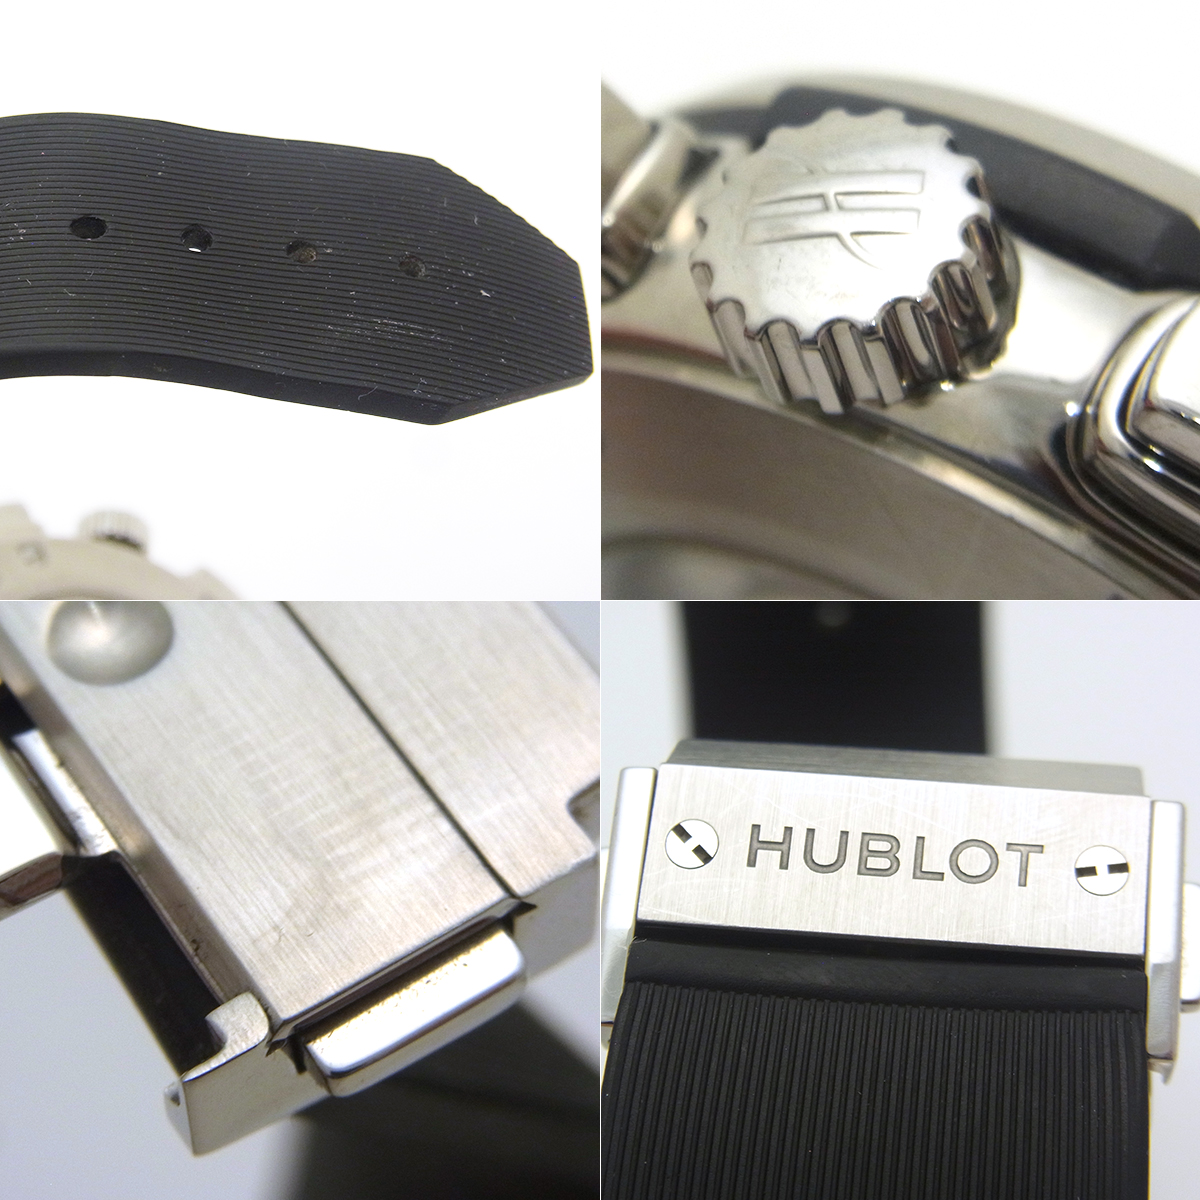 ウブロ(HUBLOT) クラシックフュージョン 521.NX.1170.RX メンズ腕時計 黒文字盤 ブラック